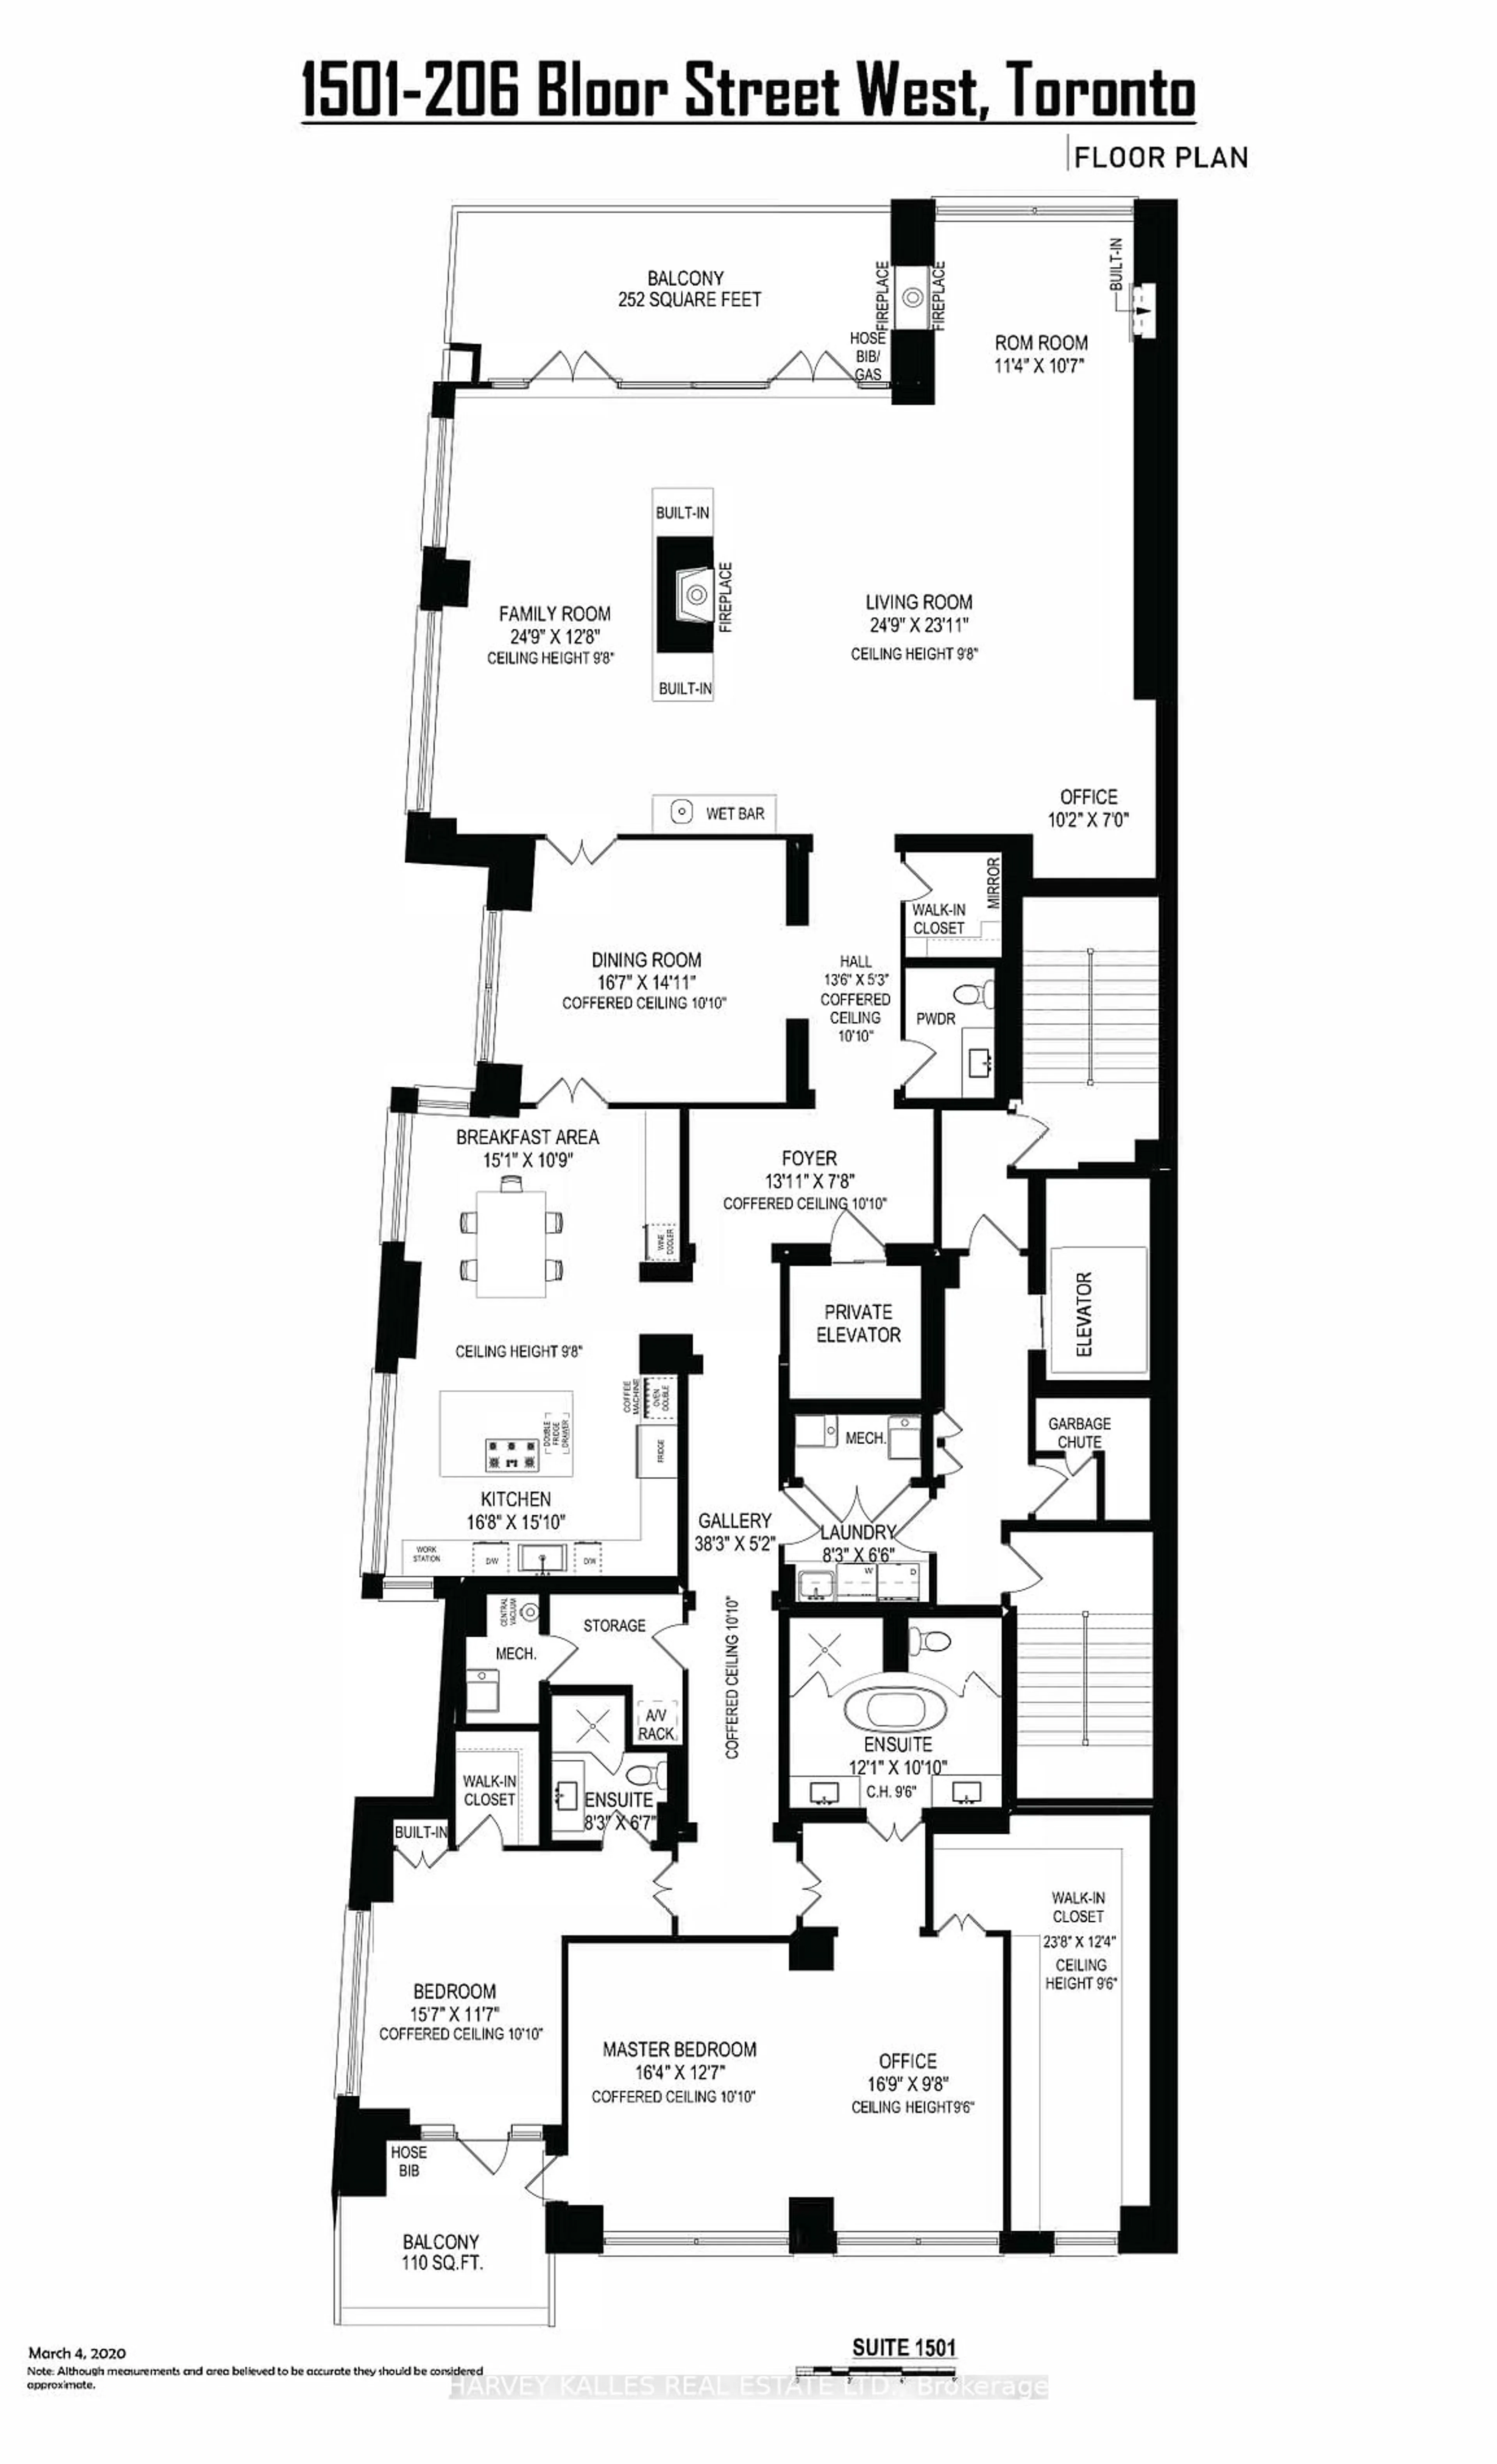 Floor plan for 206 Bloor St #1501, Toronto Ontario M5S 1T8